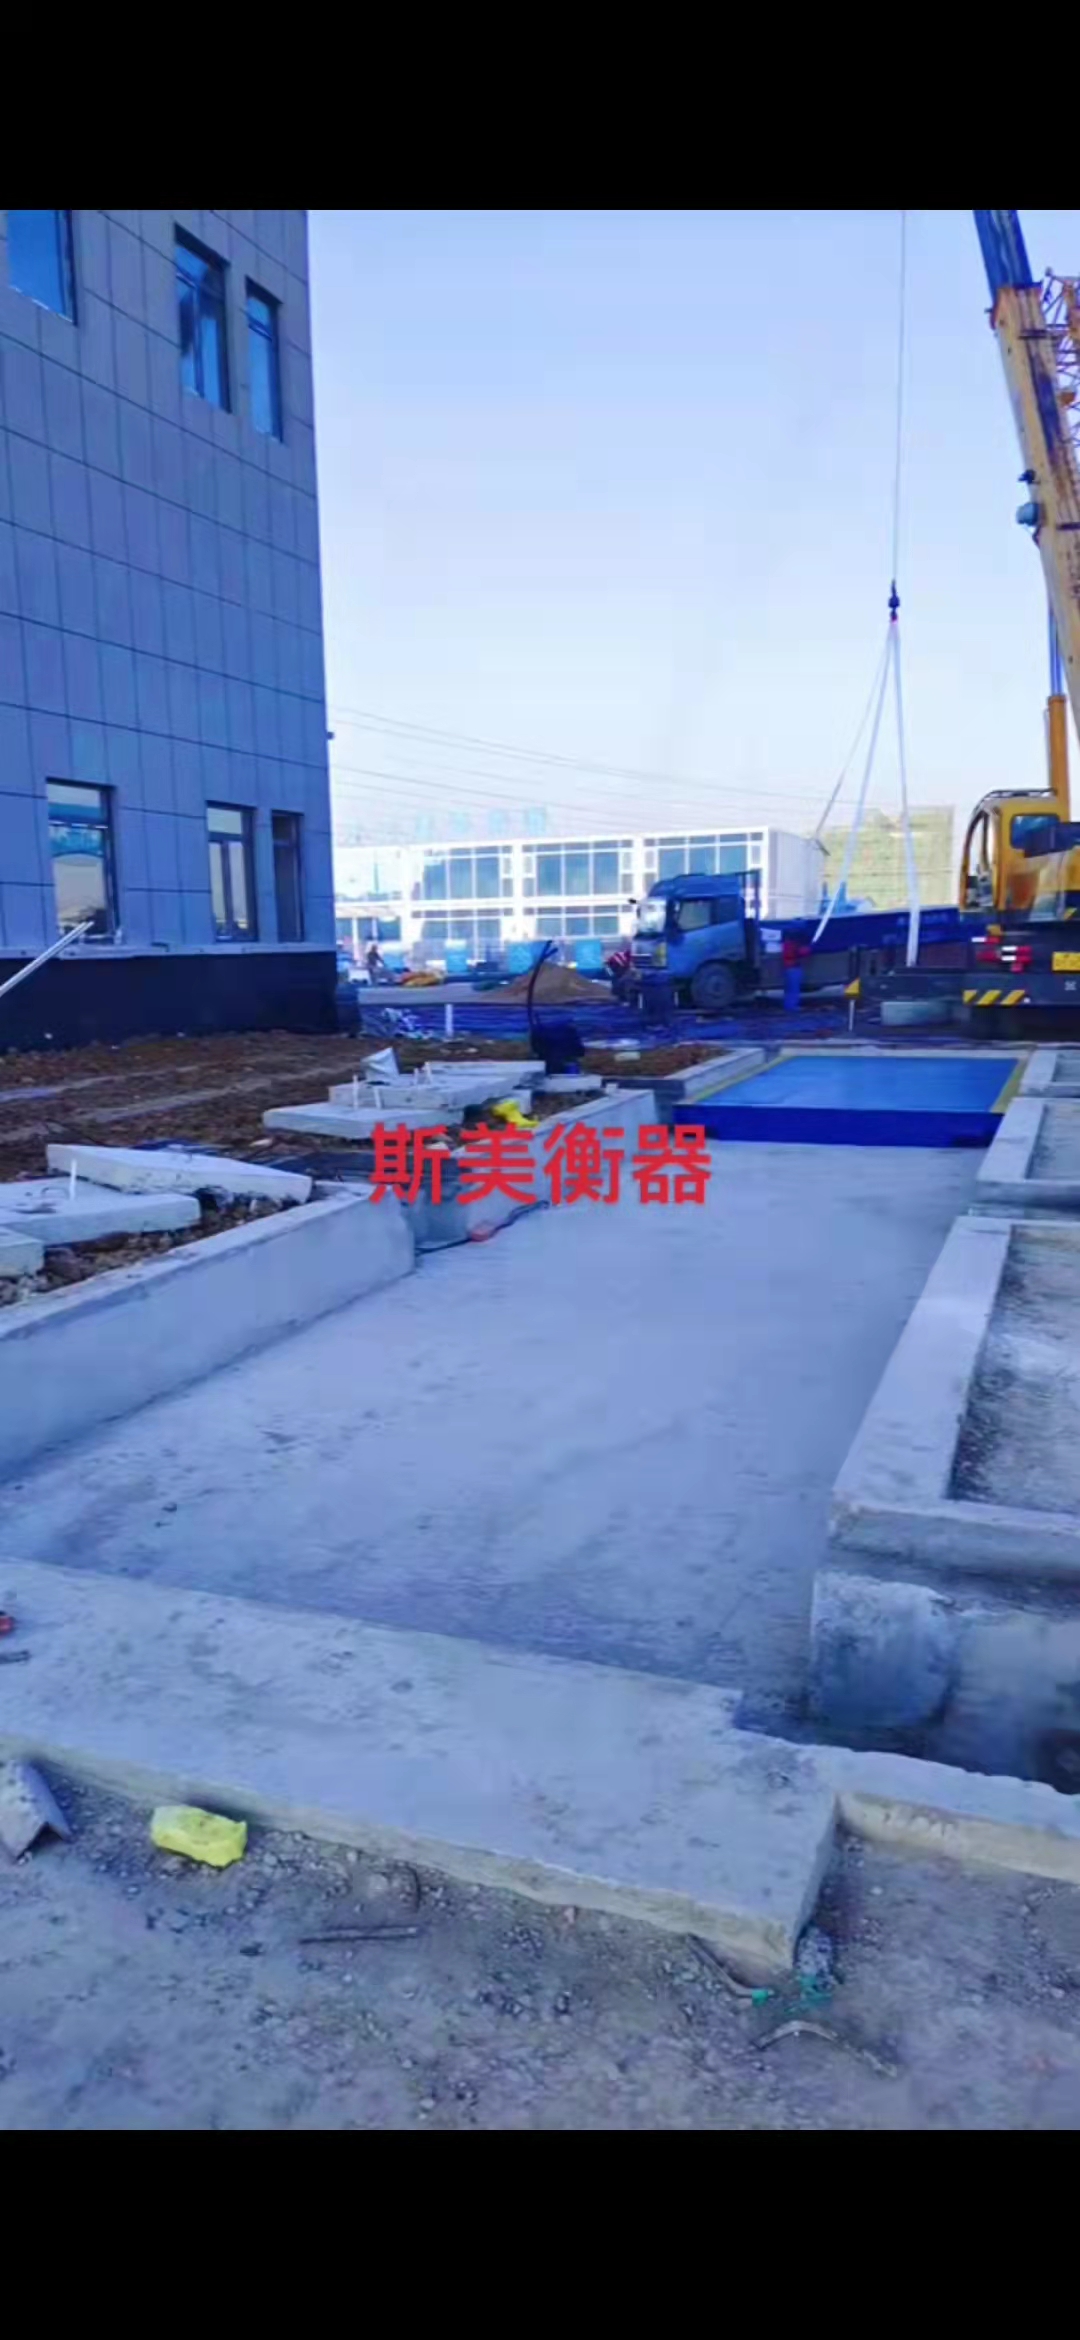 北京首创污泥处置安装青岛斯美电子衡器调试完毕